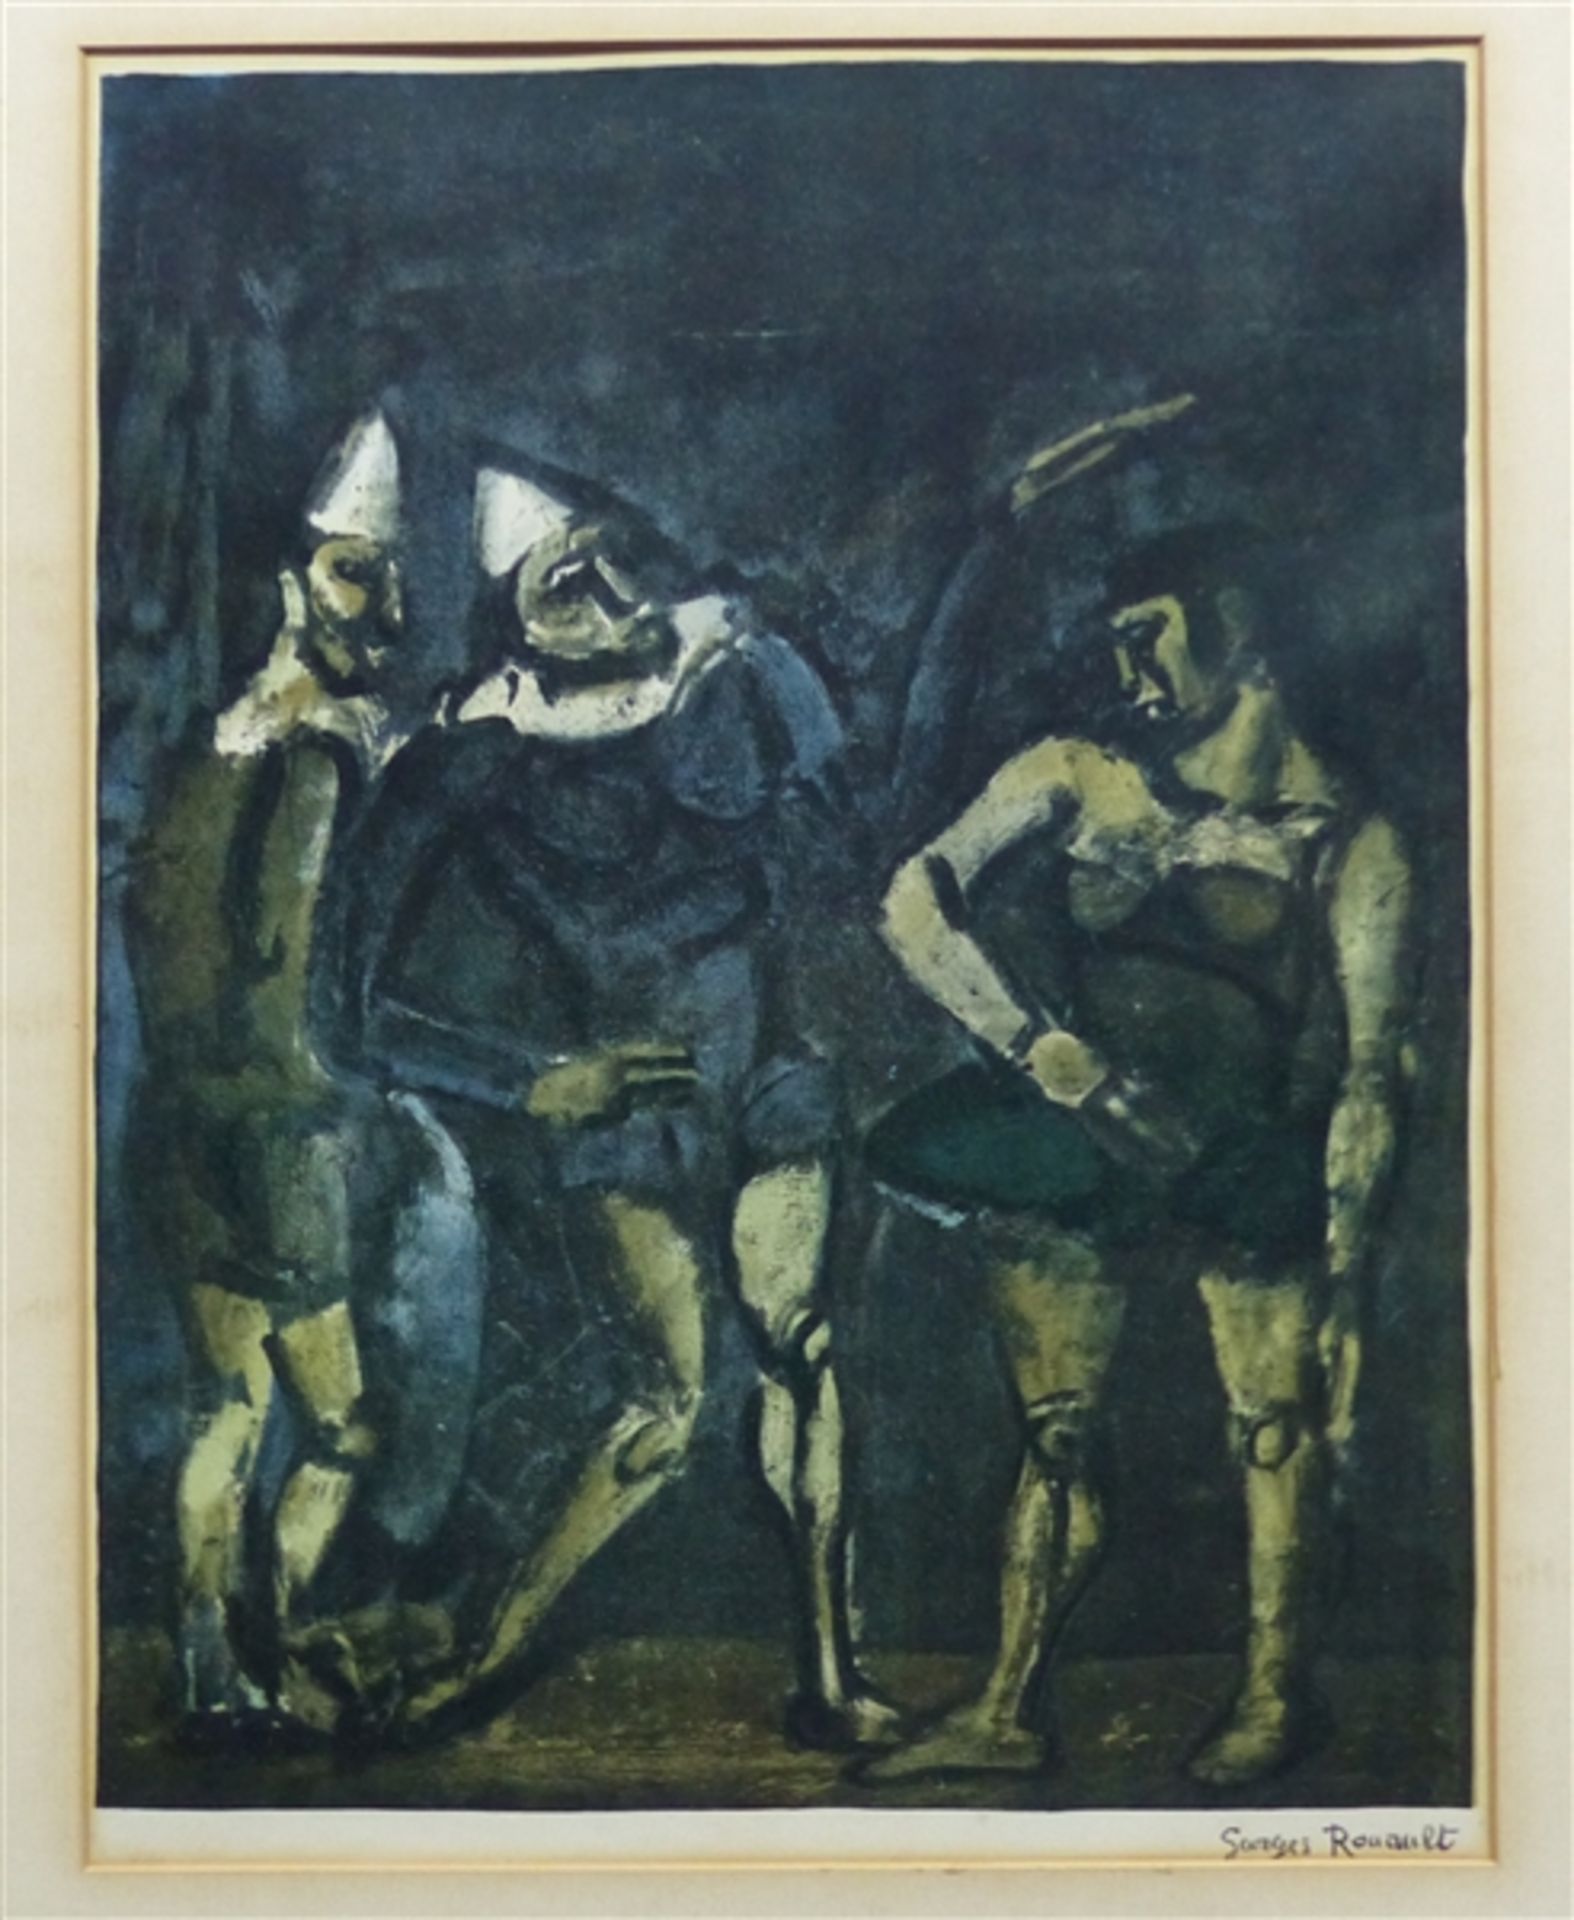 Druckgraphik von Georges Rouault, "Zirkus", rechts unten bezeichnet, 61x47 cm, im Rahmen,